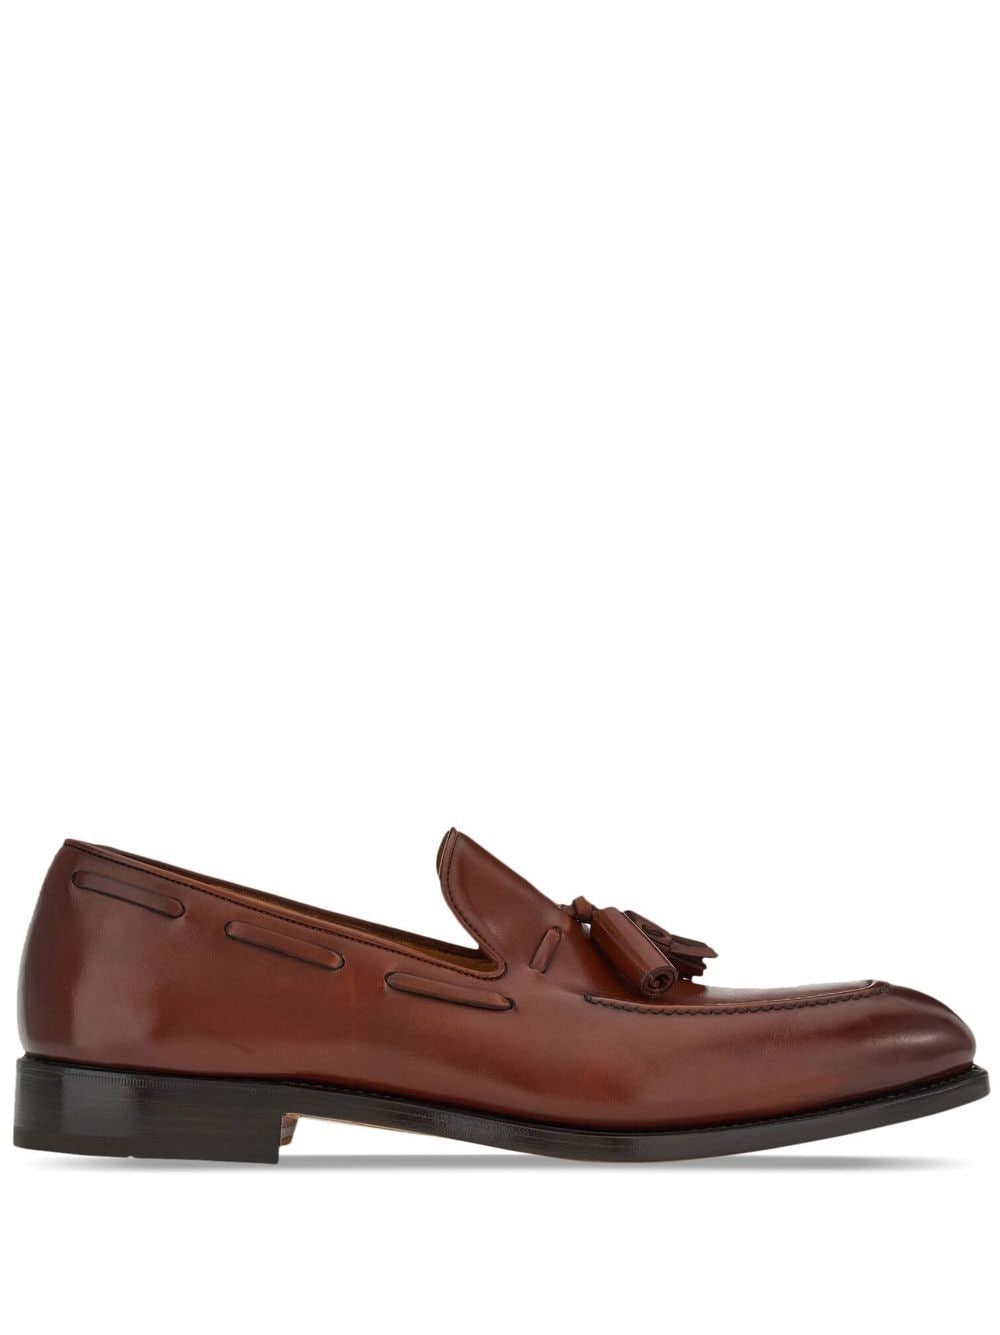 Ferragamo tasselled leather loafers - Brown von Ferragamo